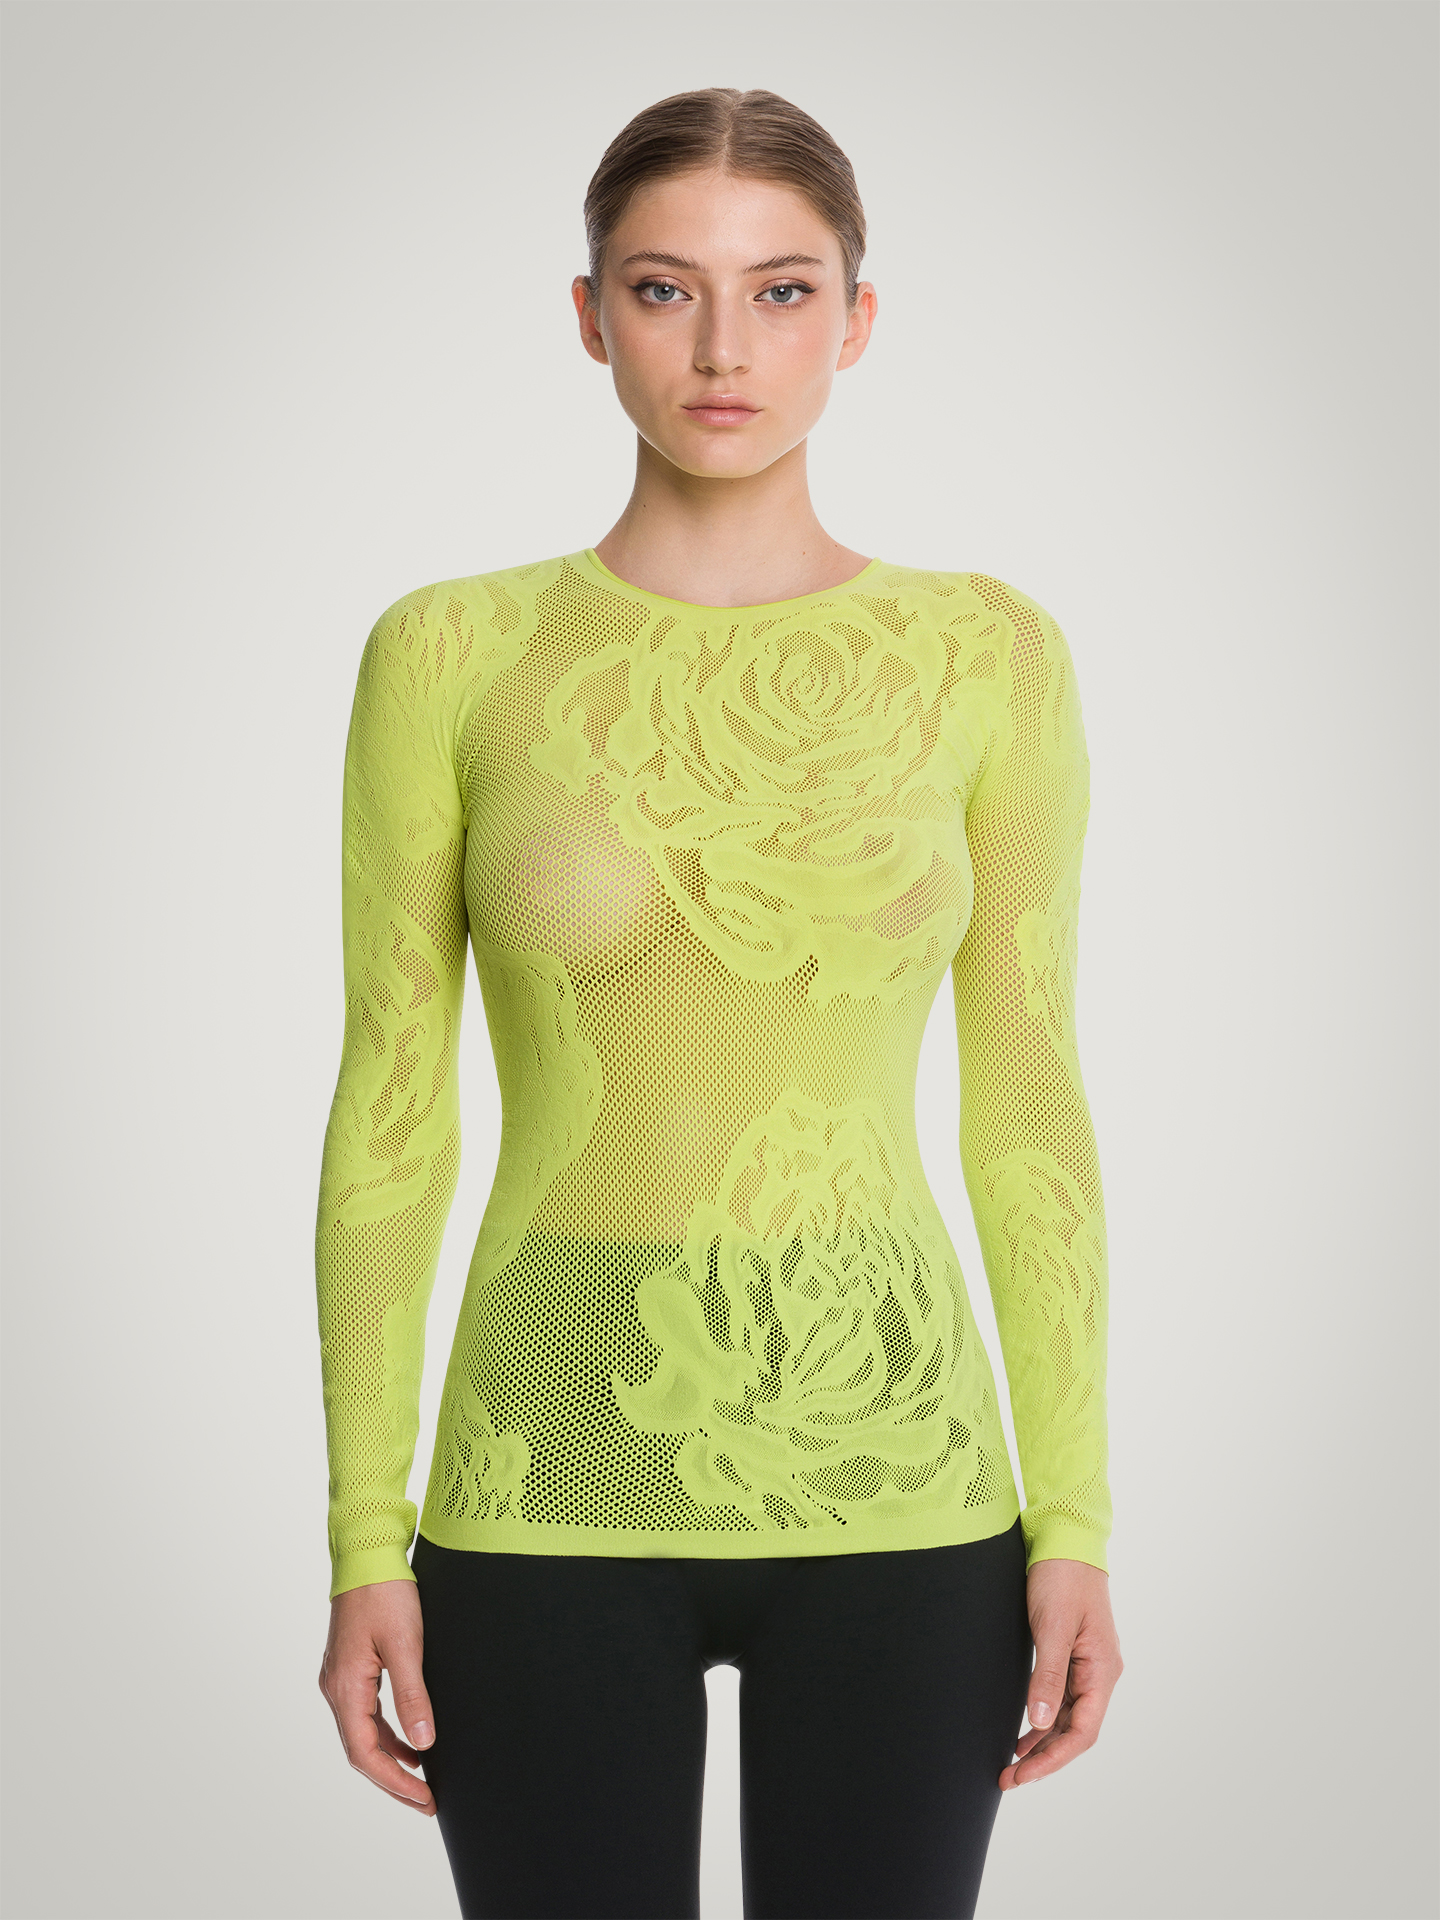 Wolford - Net Roses Top Long Sleeves, Frau, paradise green, Größe: L günstig online kaufen